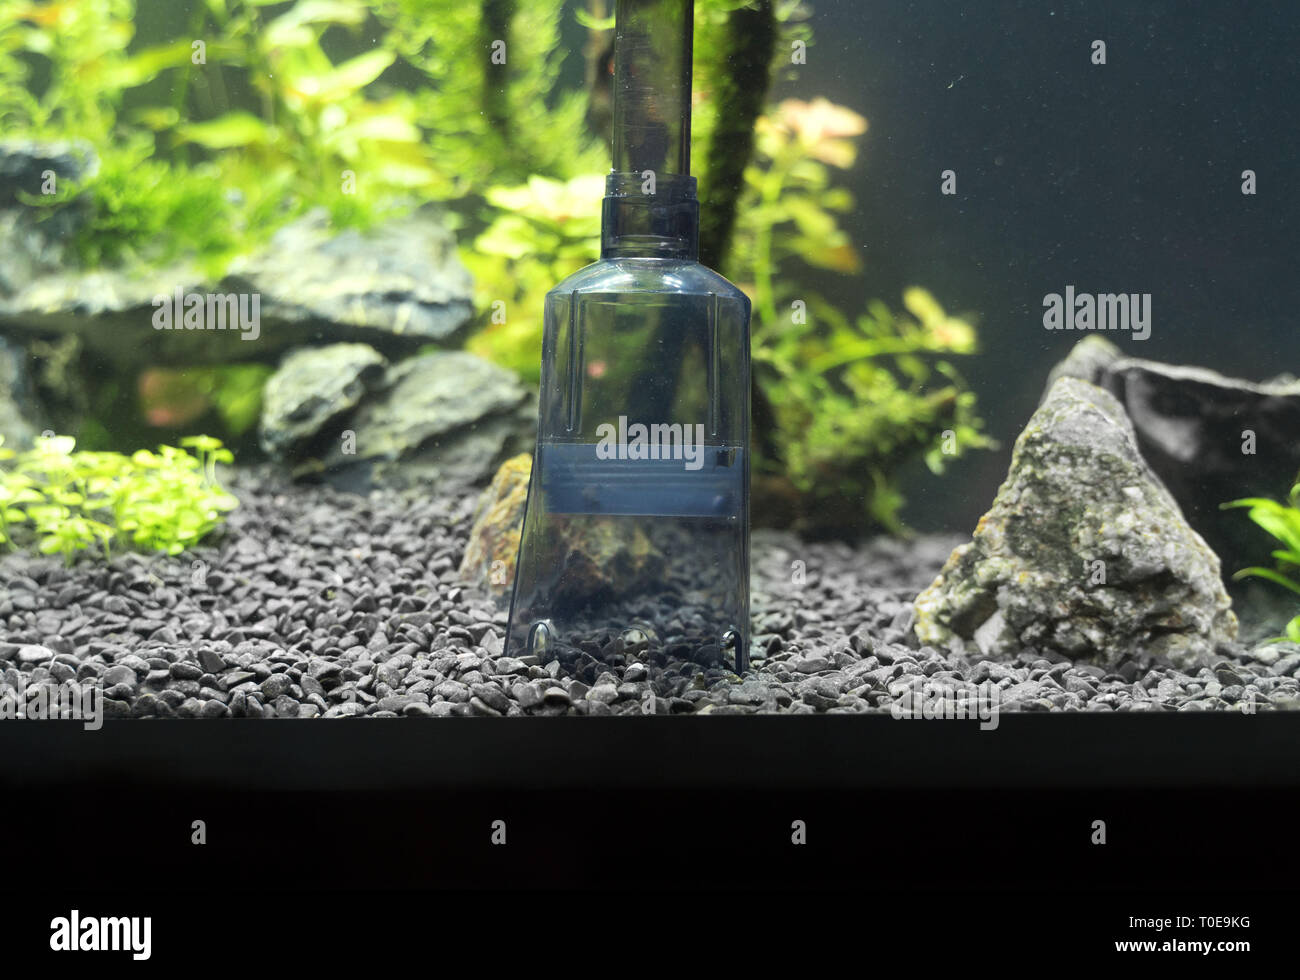 Siphon gravel cleaner tool in the aquarium. Stock Photo